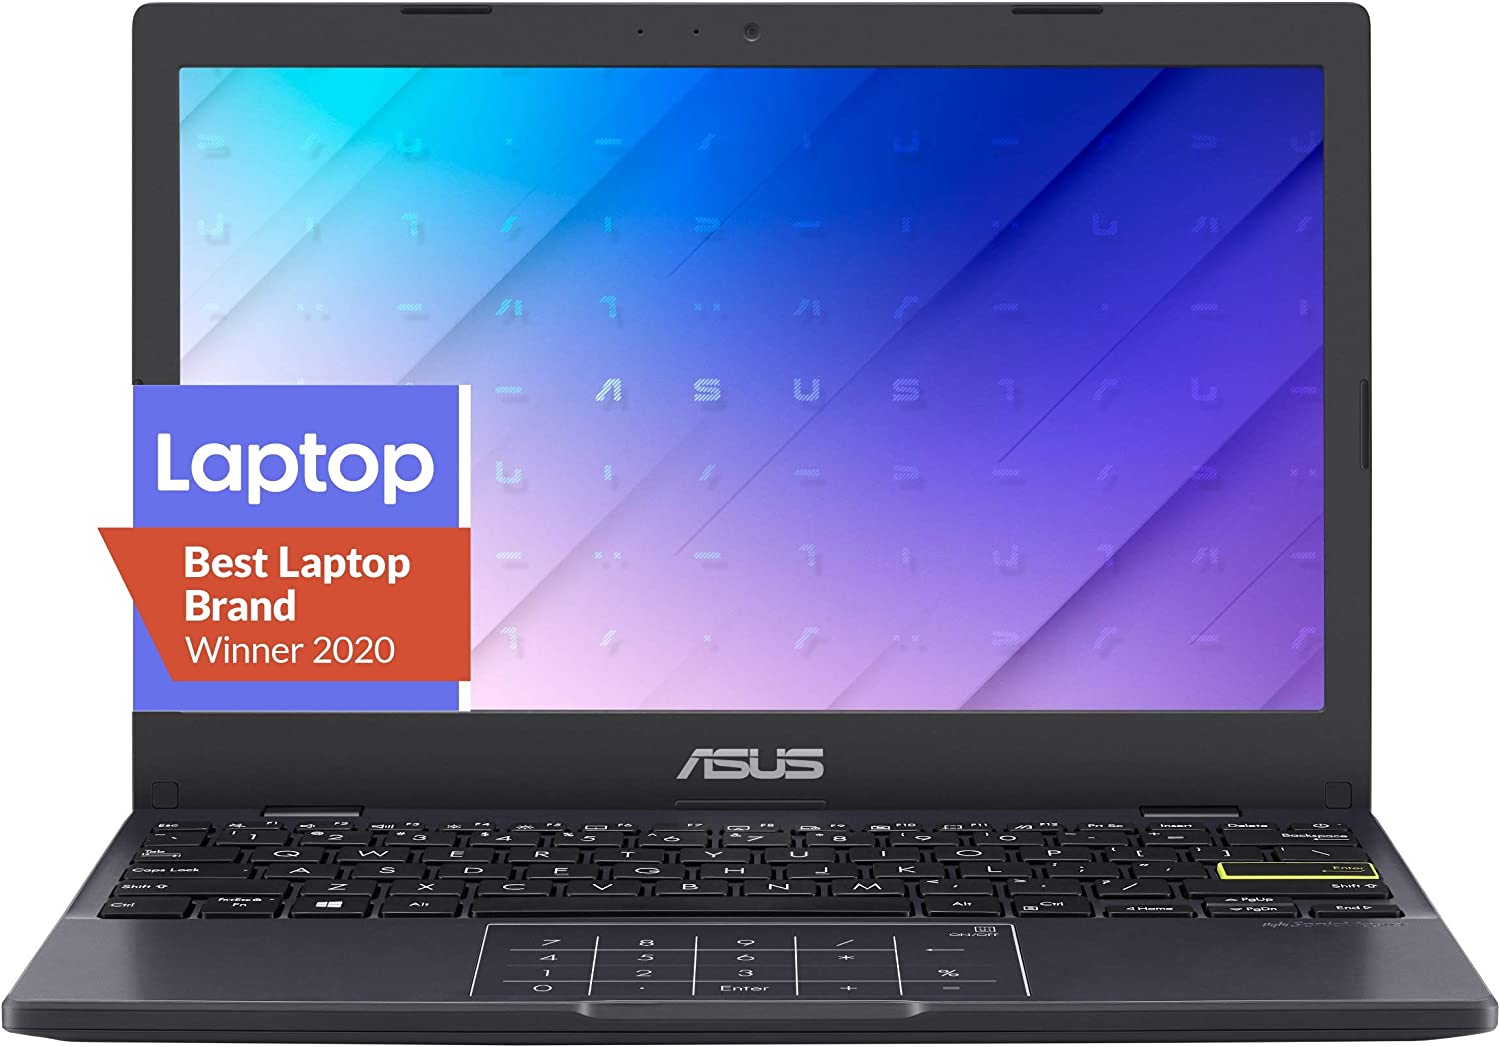 ASUS L210 laptop